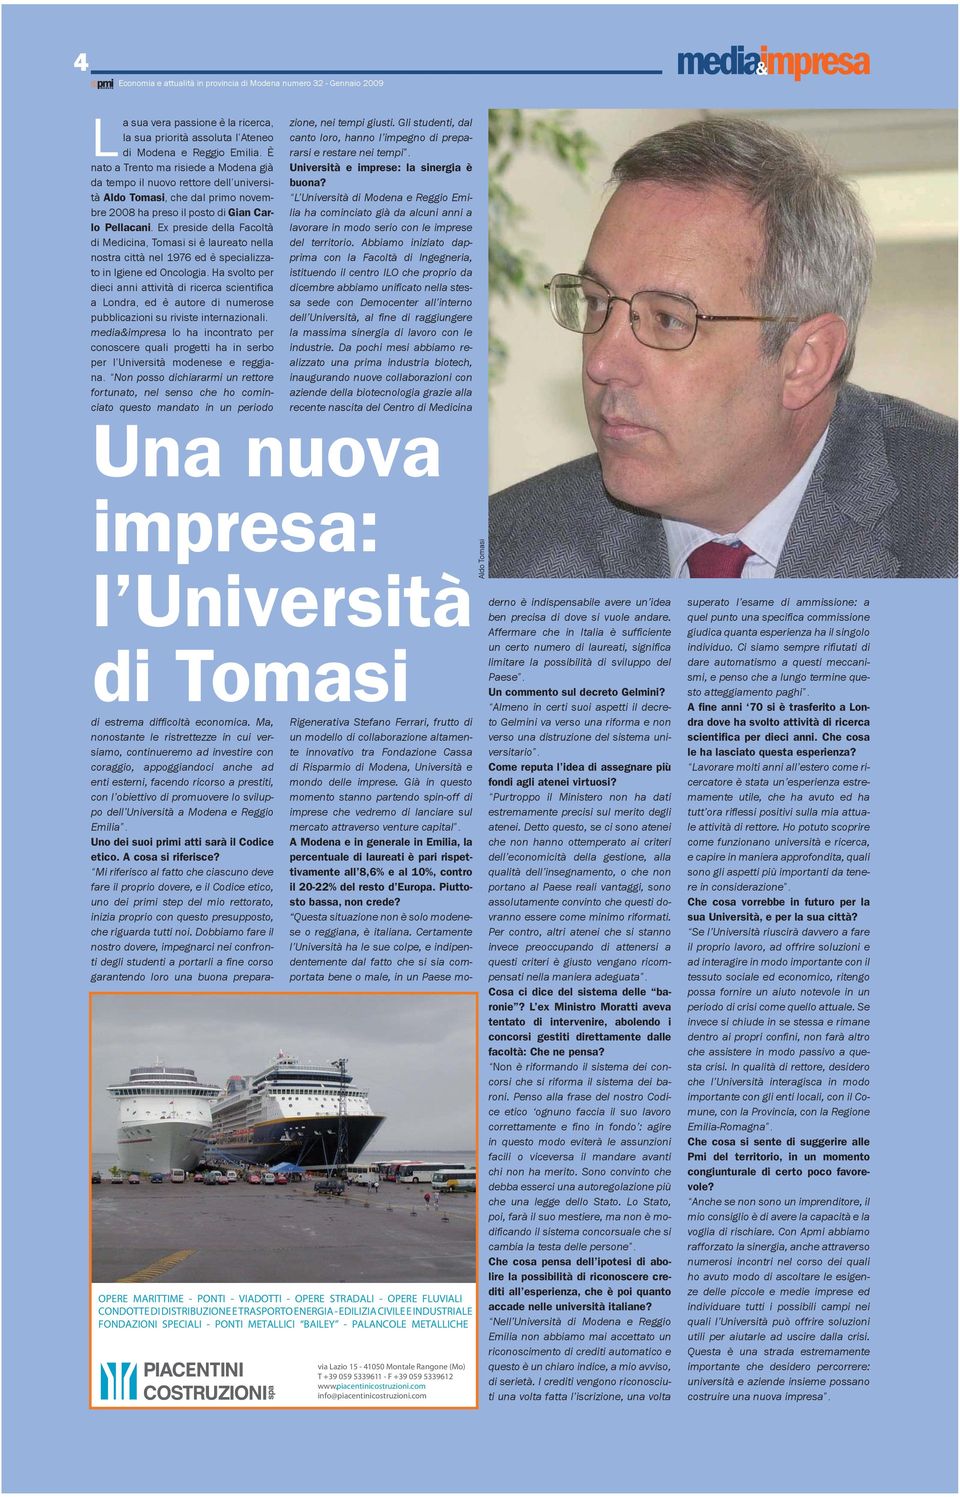 Ex preside della Facoltà di Medicina, Tomasi si è laureato nella nostra città nel 1976 ed è specializzato in Igiene ed Oncologia.